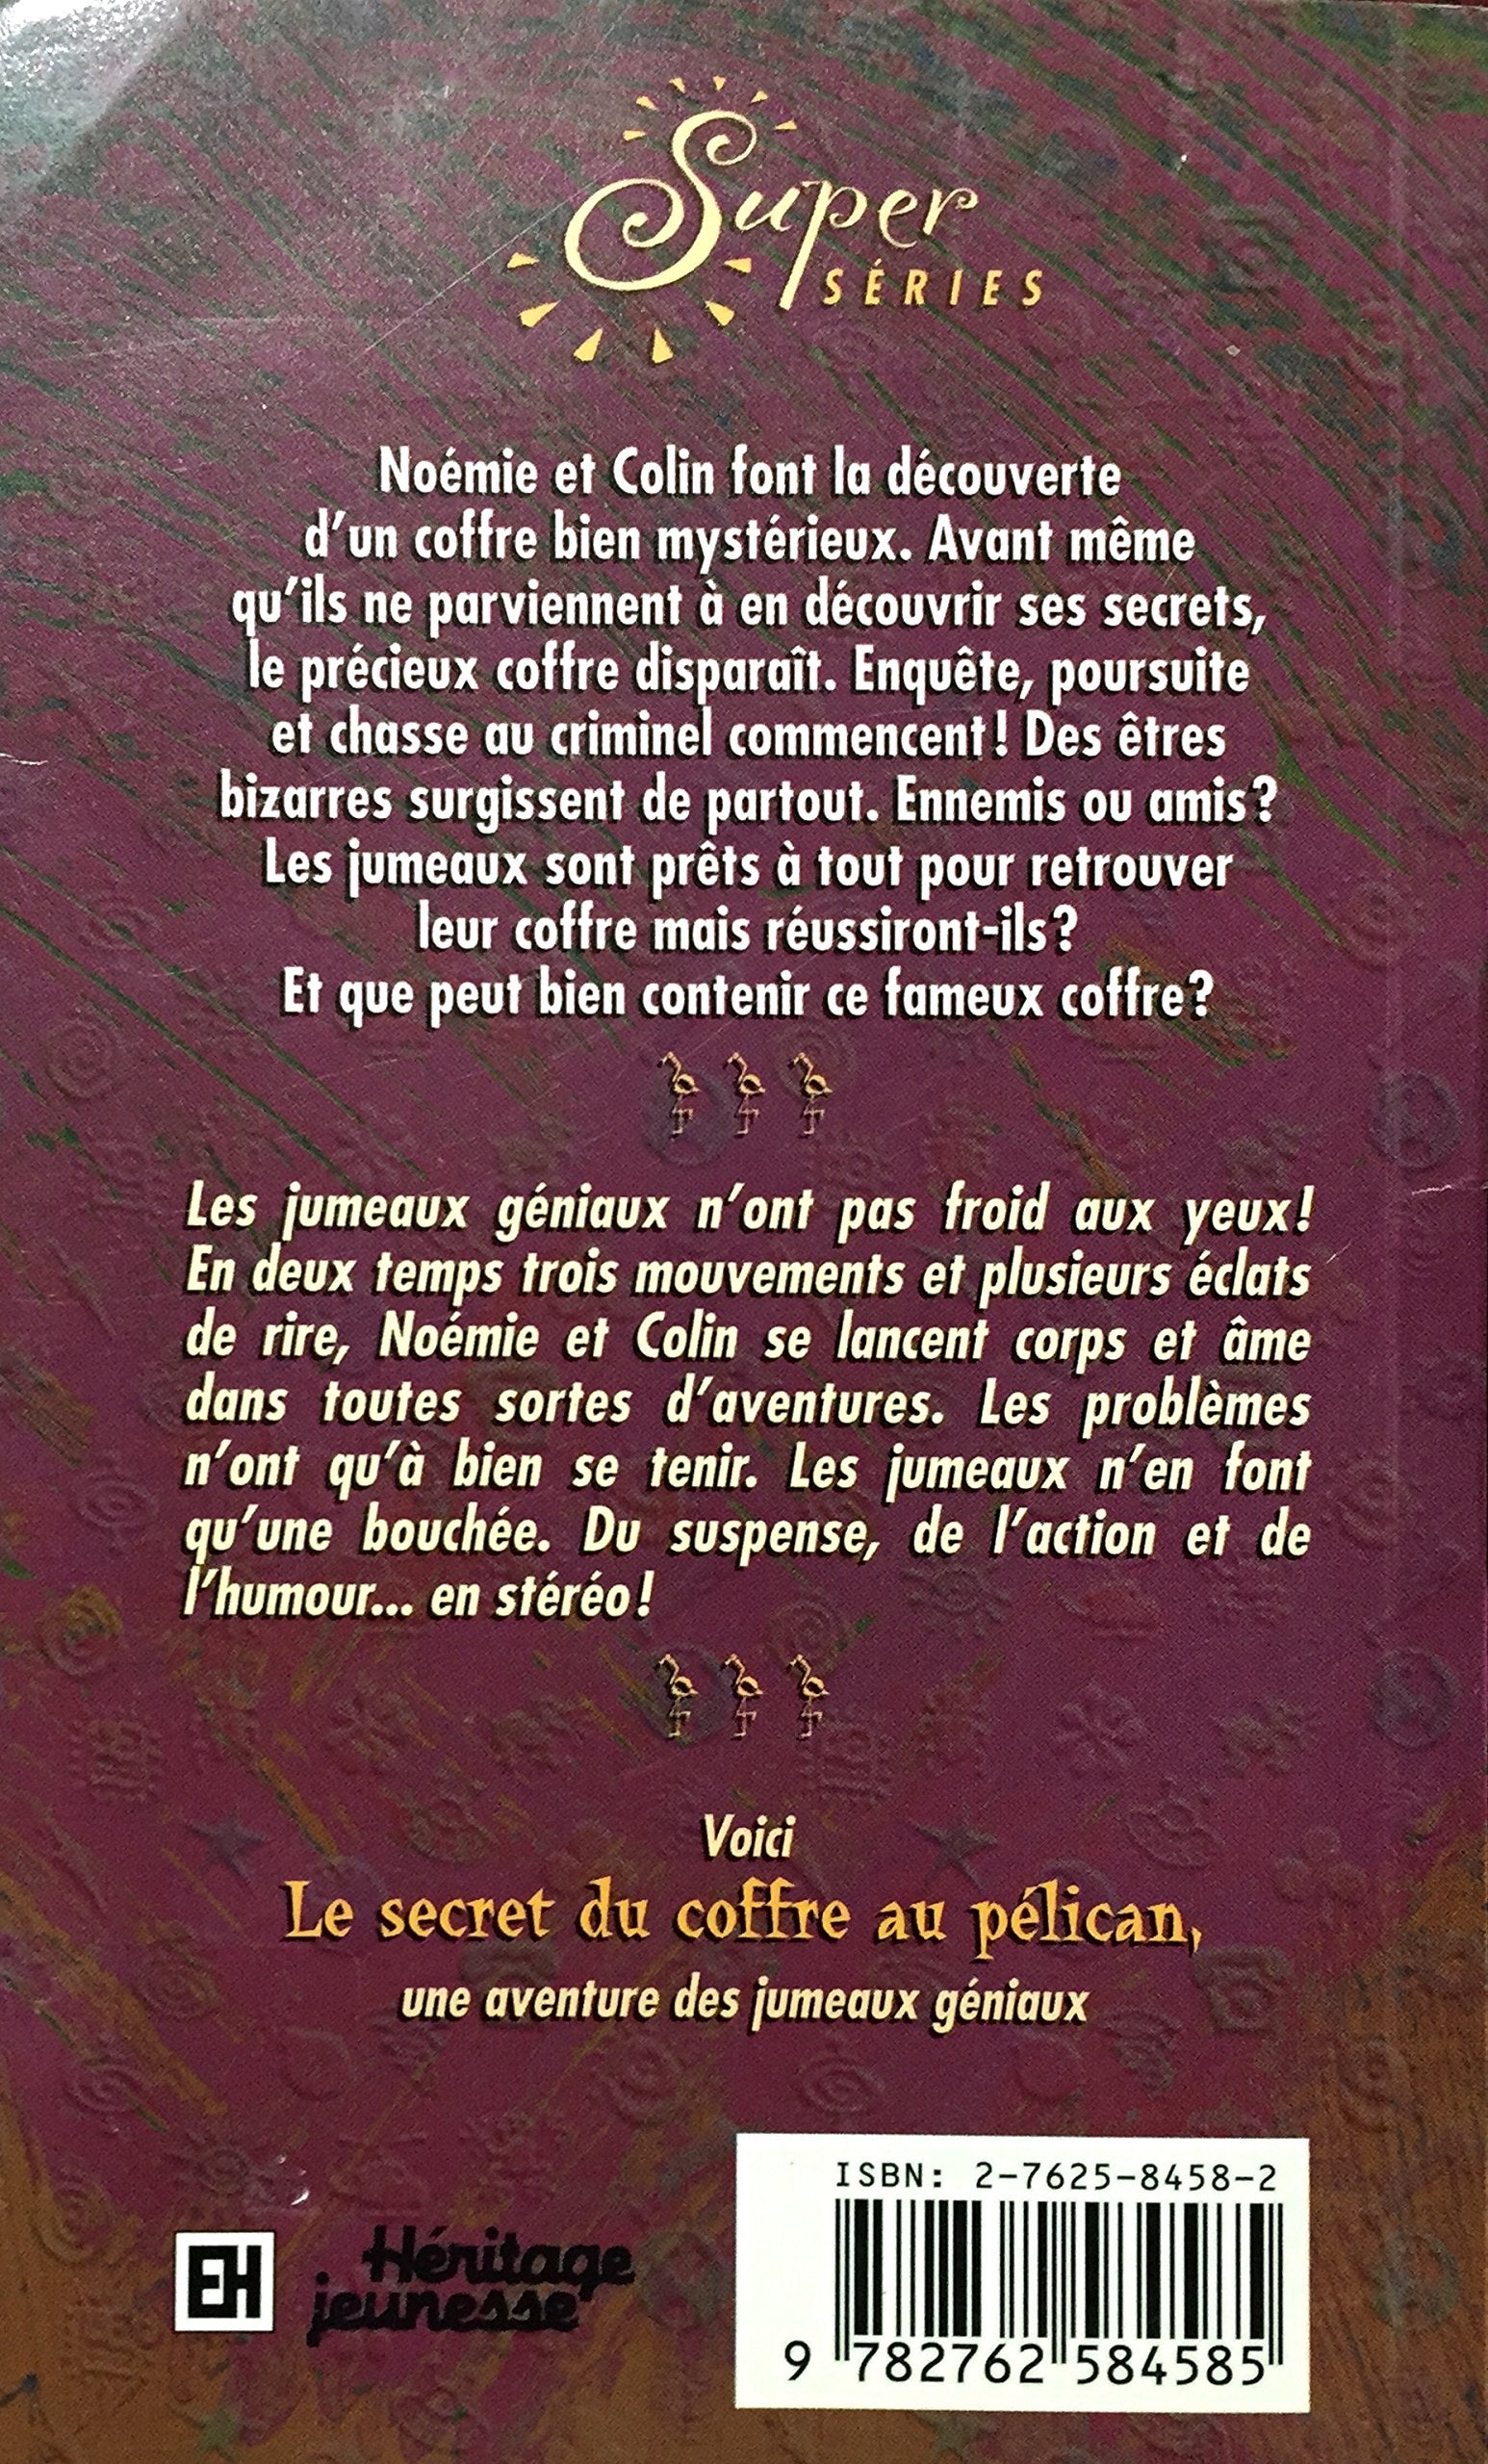 Les aventures des jumaux géniaux : Le secret du coffre au pélican (Christian Lemieux-Fournier)